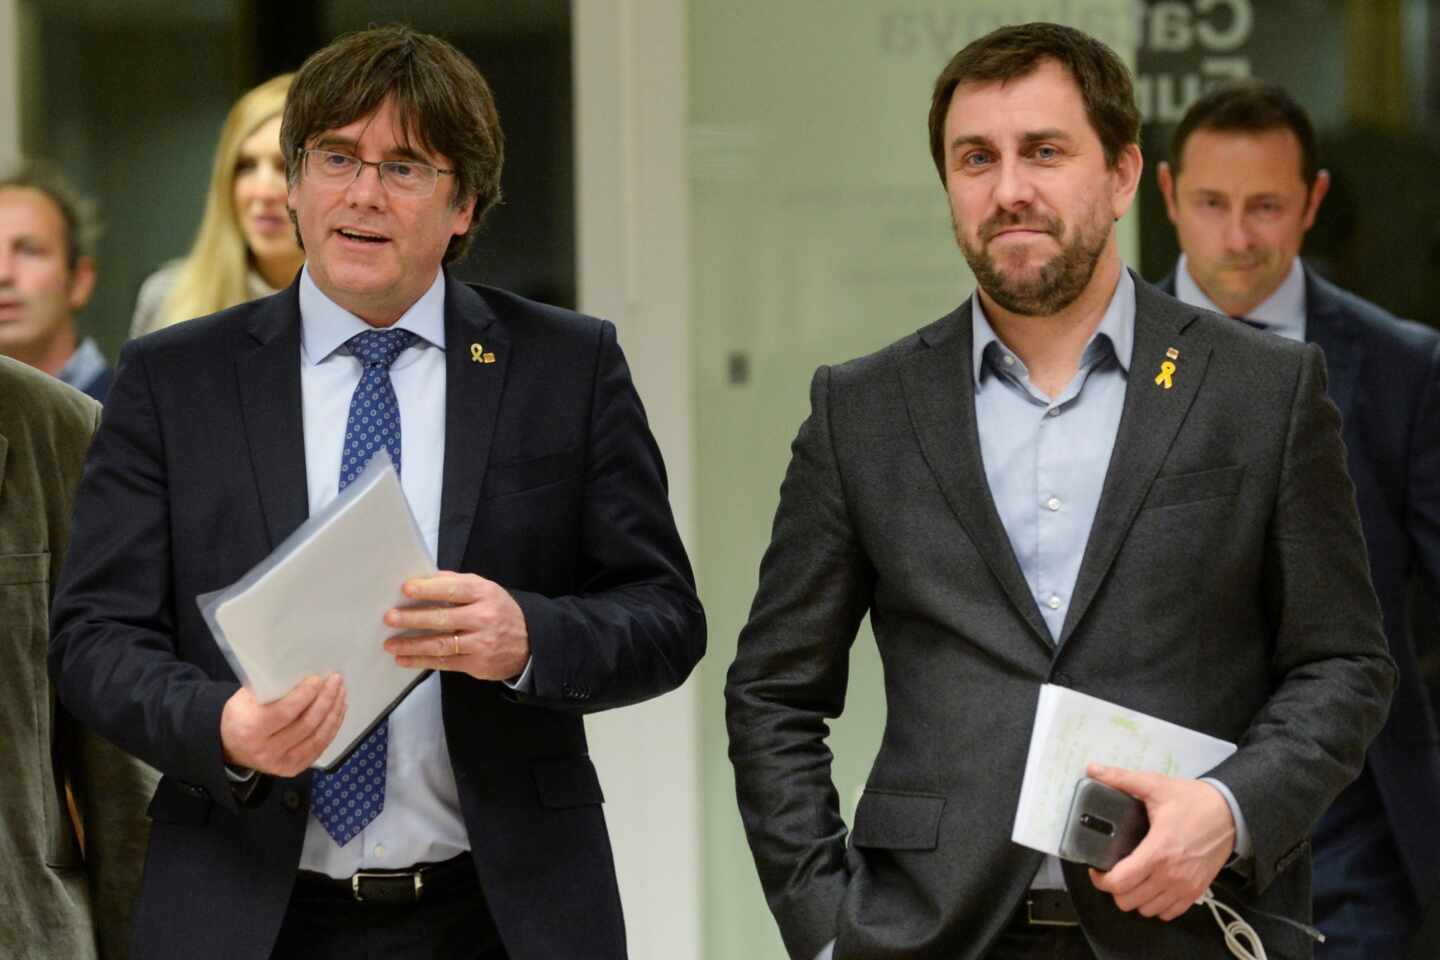 Puigdemont y Comín participarán en un acto a pocos kilómetros de la frontera entre España y Francia